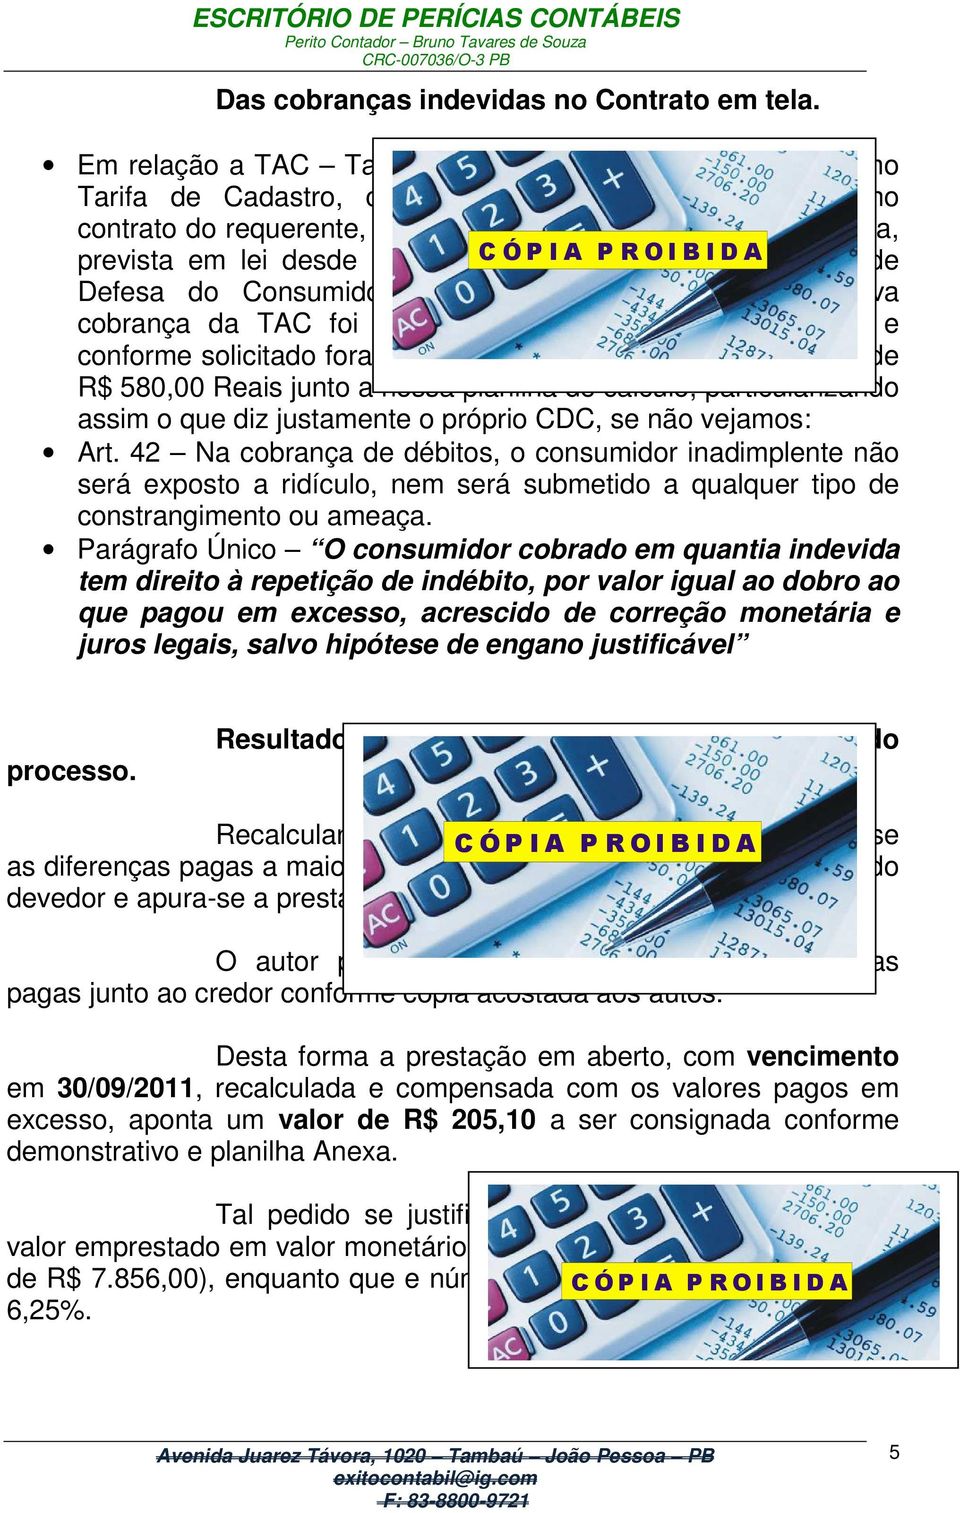 desde 11 de Setembro CÓPIA de PROIBIDA 1990, no Código de Defesa do Consumidor, e mais recentemente a respectiva cobrança da TAC foi banida pelo Banco Central do Brasil e conforme solicitado foram